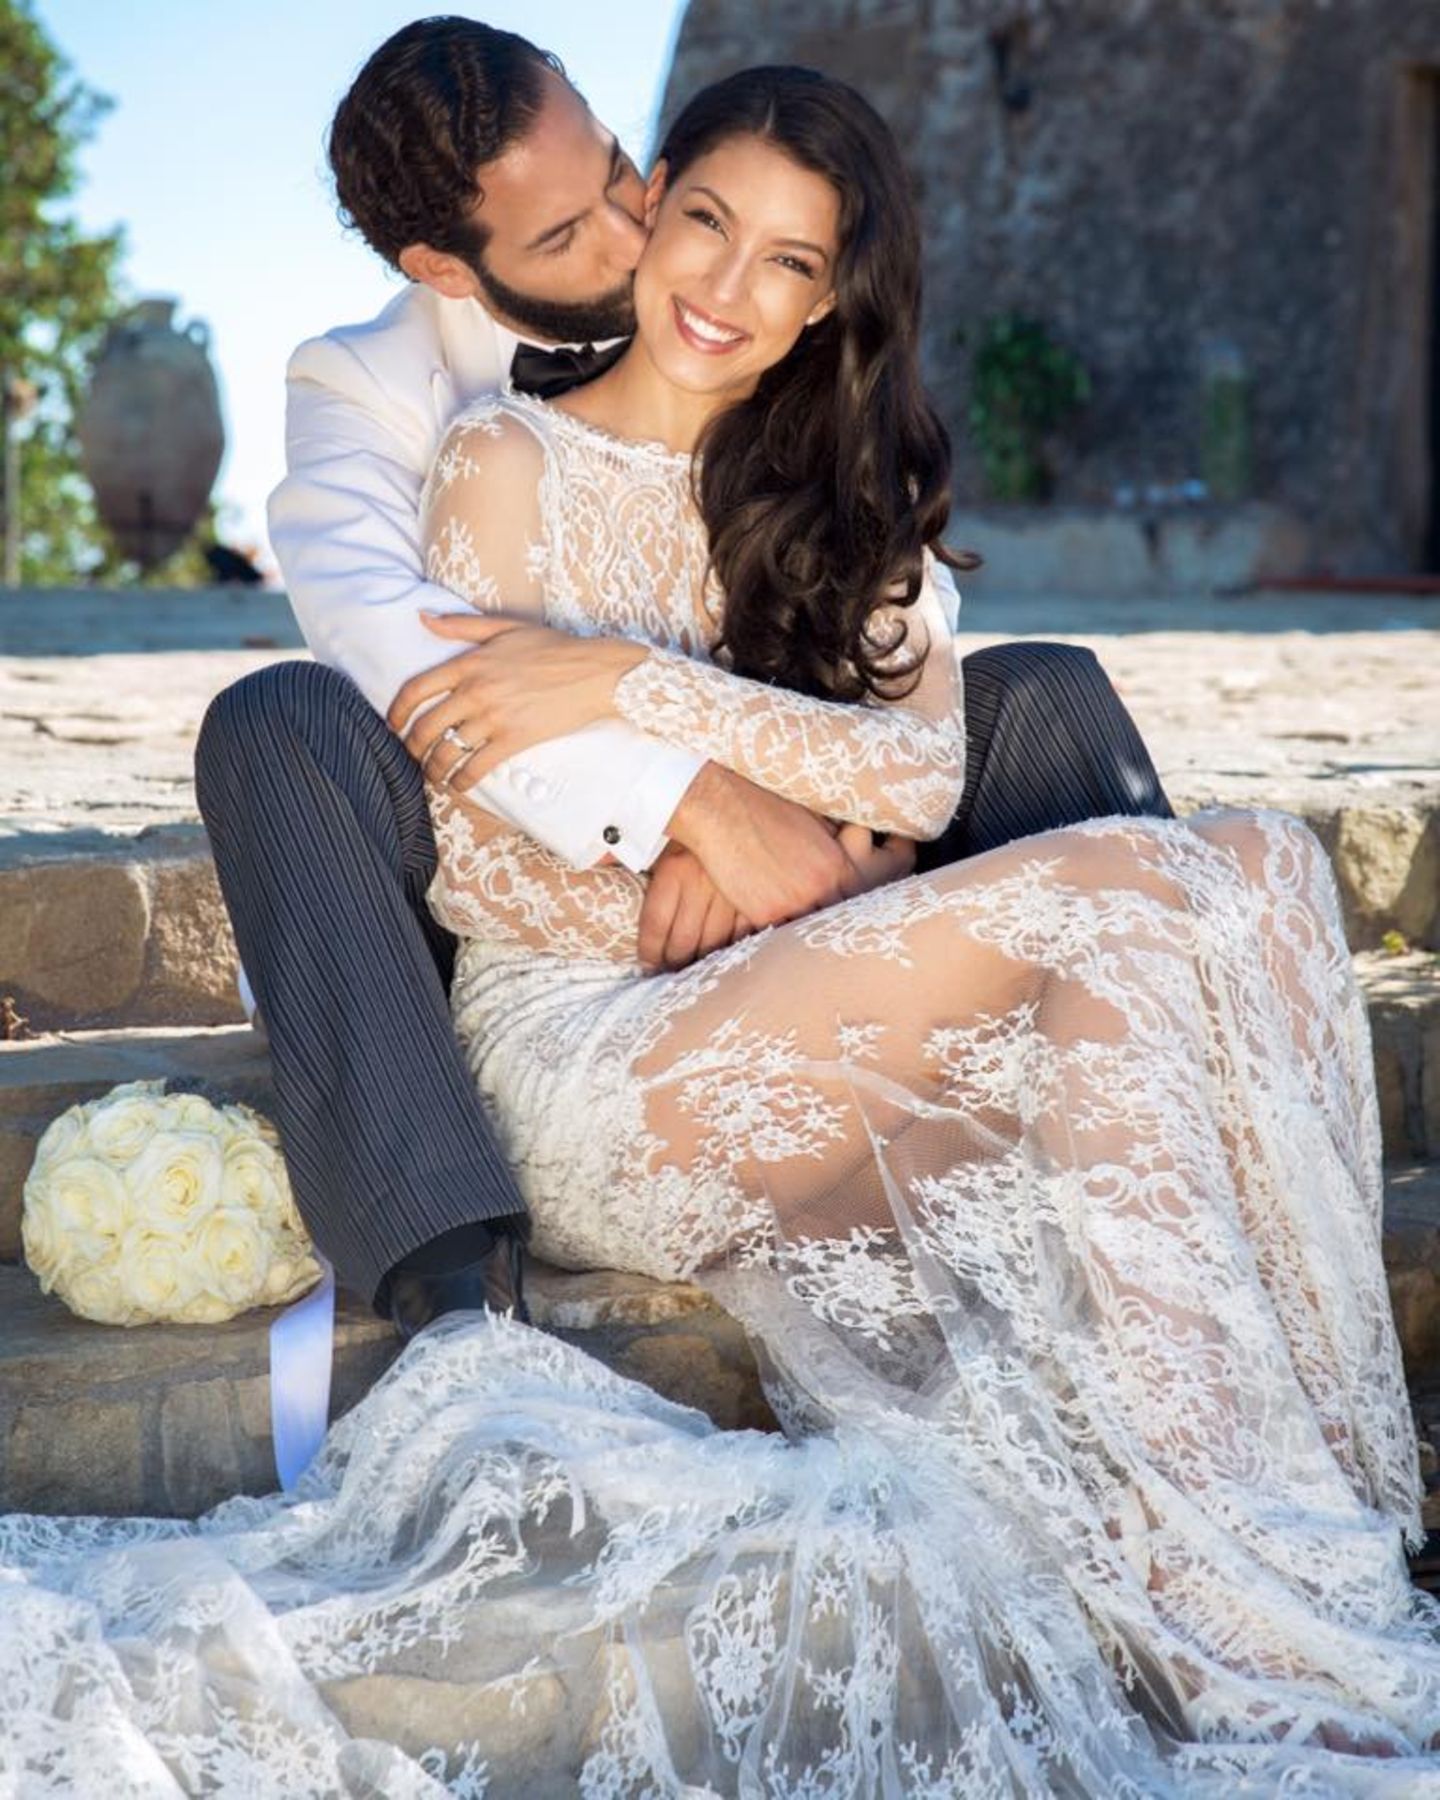 27. Juni 2016  Zum ersten Hochzeitstag erfreut Rebecca Mir uns mit einem weiteren Foto ihrer Hochzeit mit Massimo Sinató. Ein Jahr nach ihrer Vermählung sind das Model und der Tänzer verliebt wie eh und je.